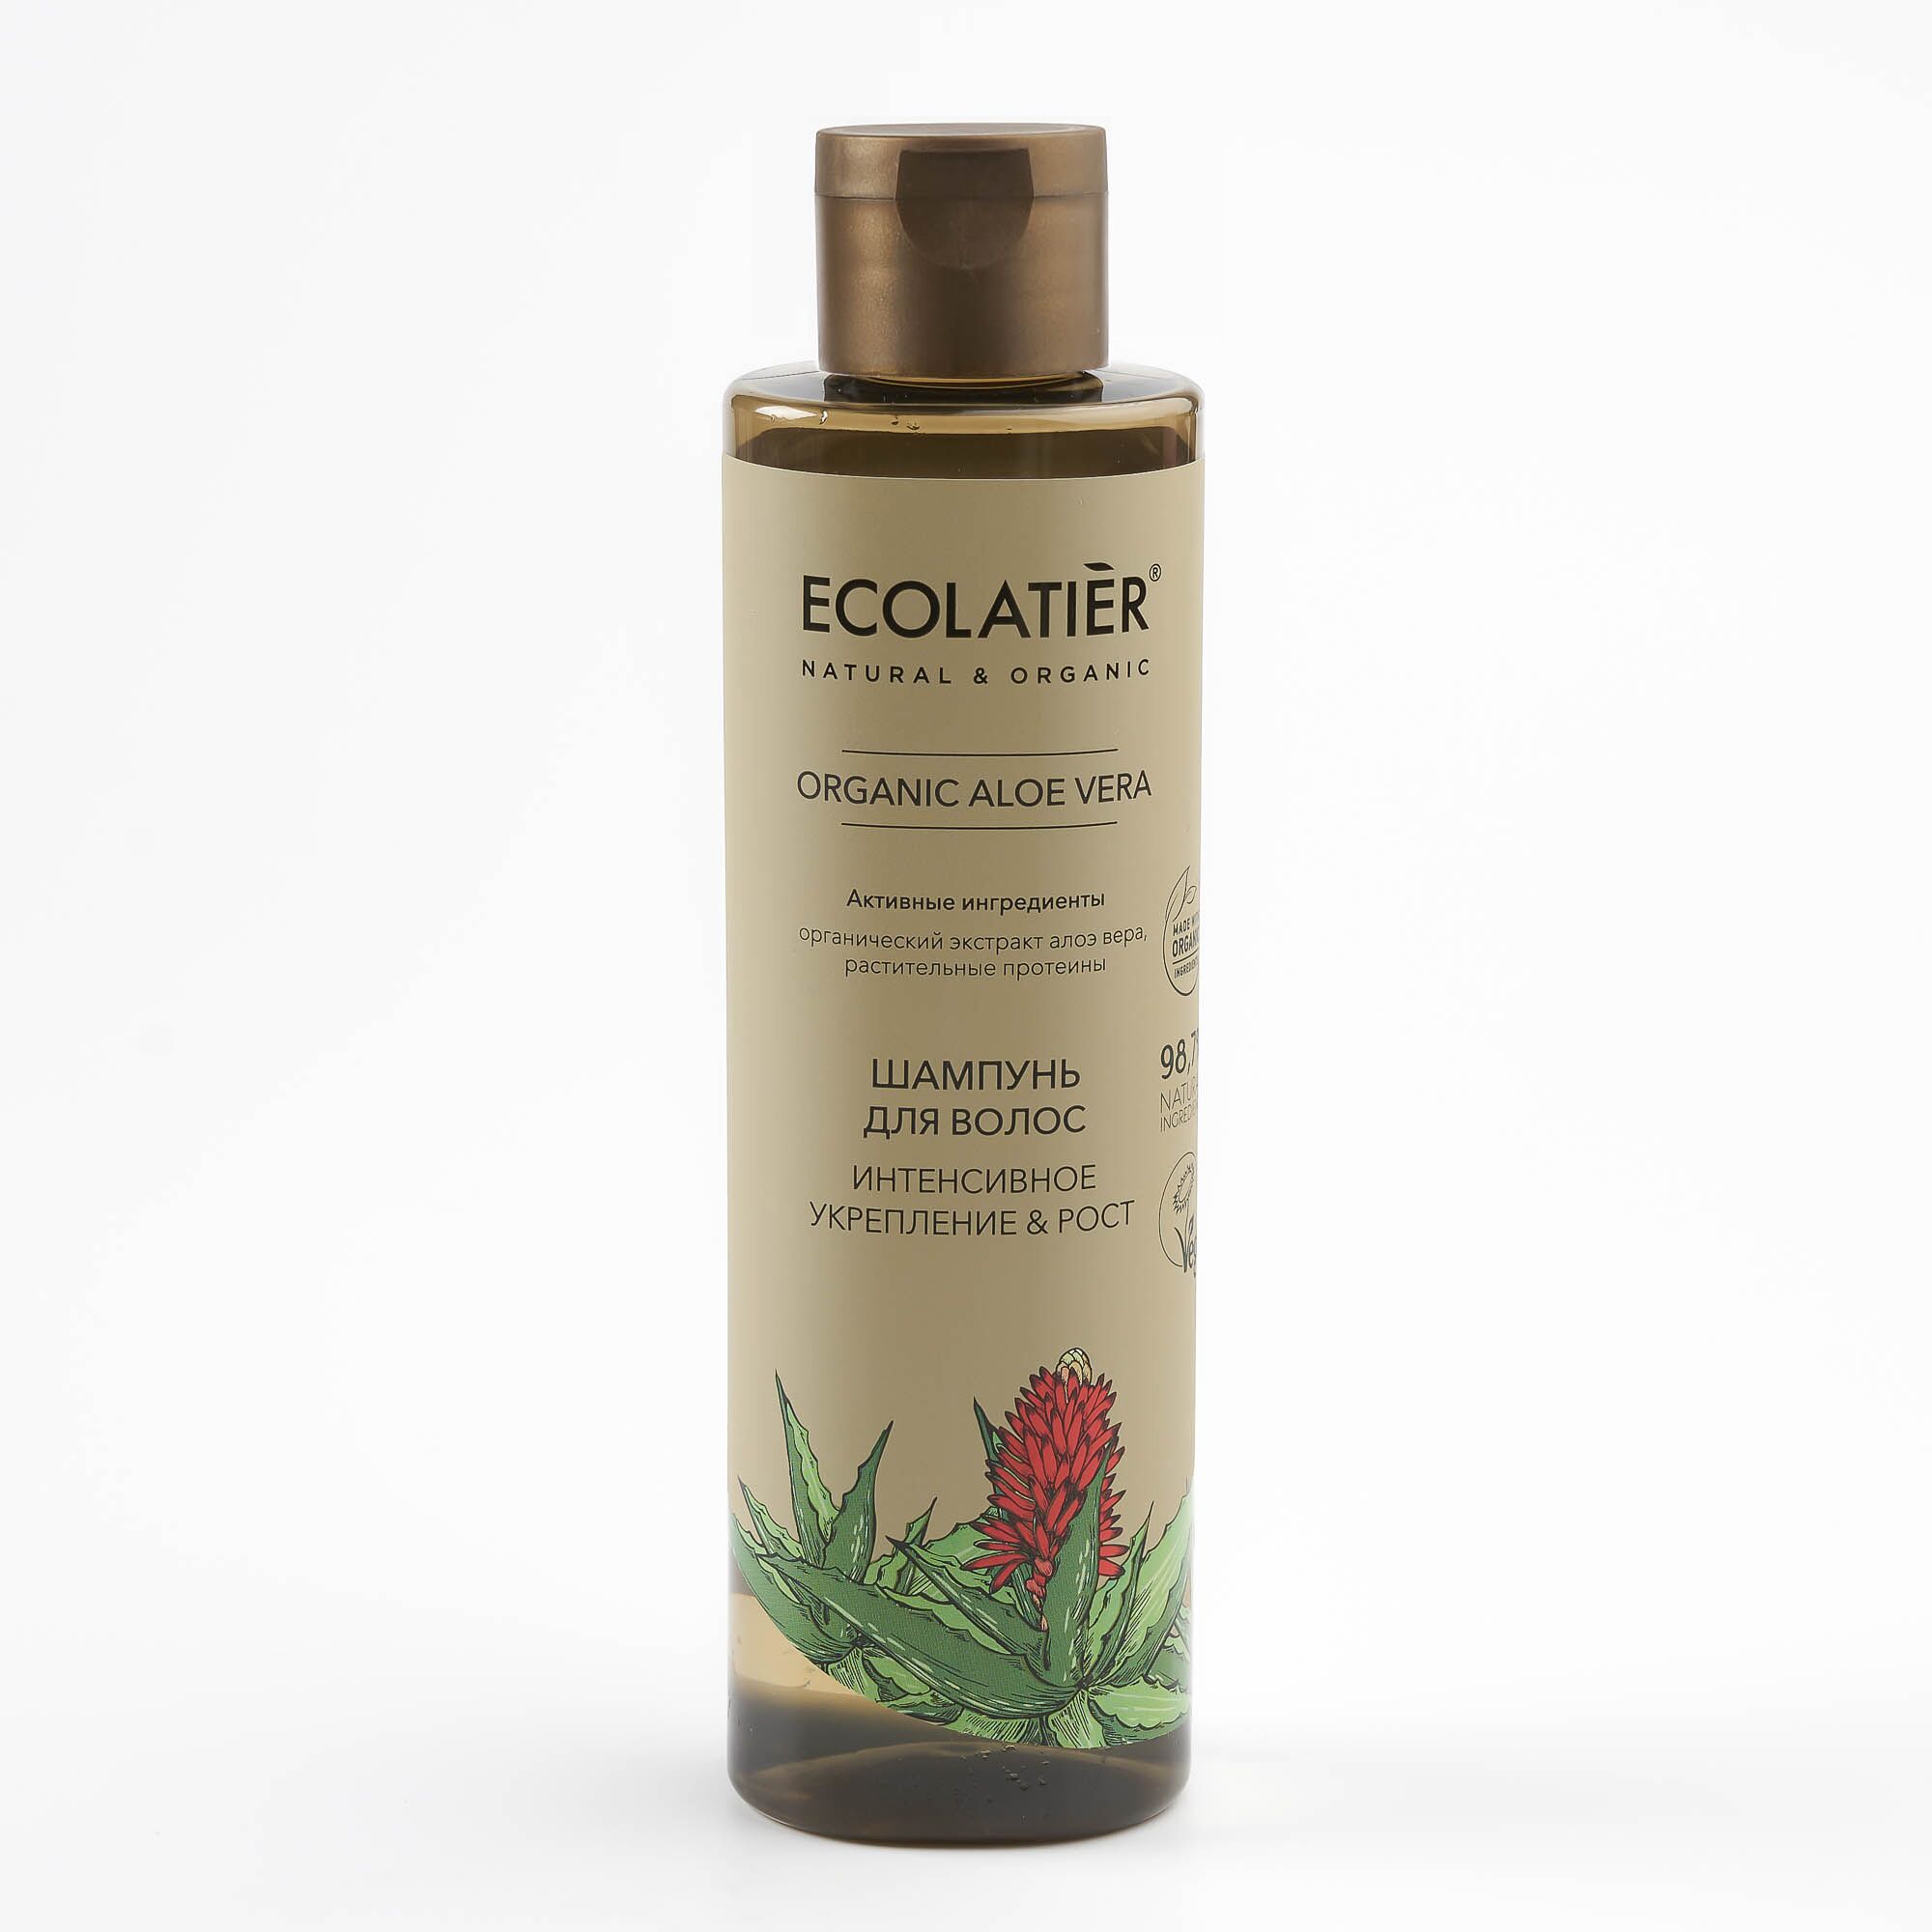 Шампунь для волос "Интенсивное Укреплеение & Рост" Organic Aloe Vera (Ecolatier)